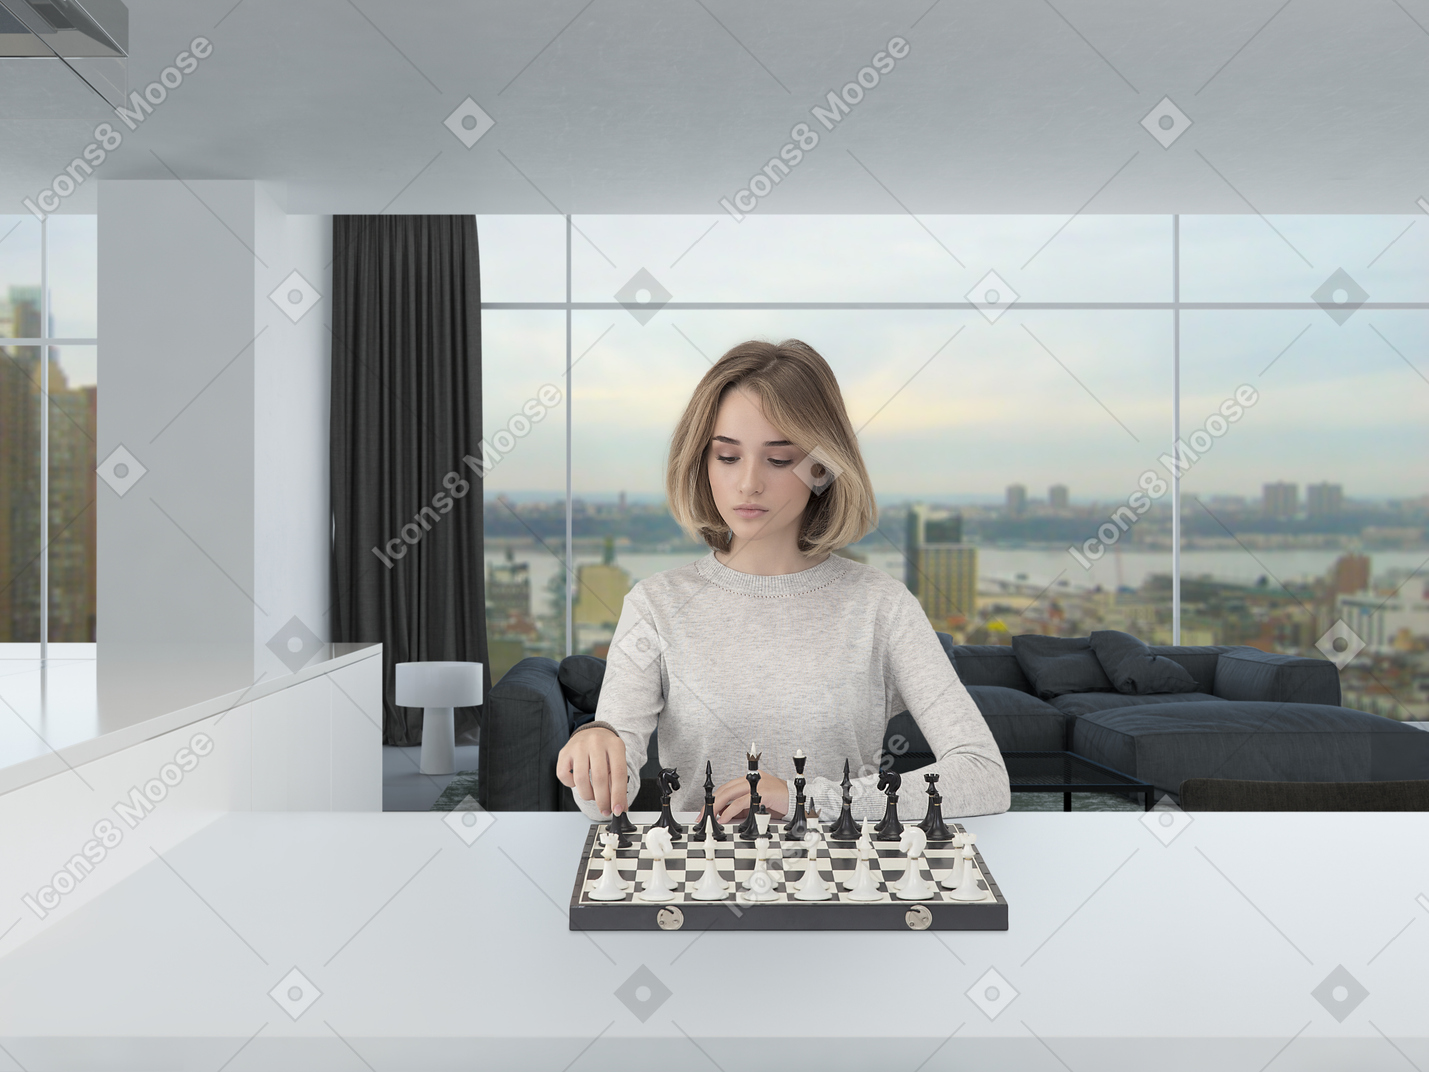 Belle jeune femme dans un pull gris clair à la recherche concentrée tout en jouant aux échecs dans une salle spacieuse et moderne